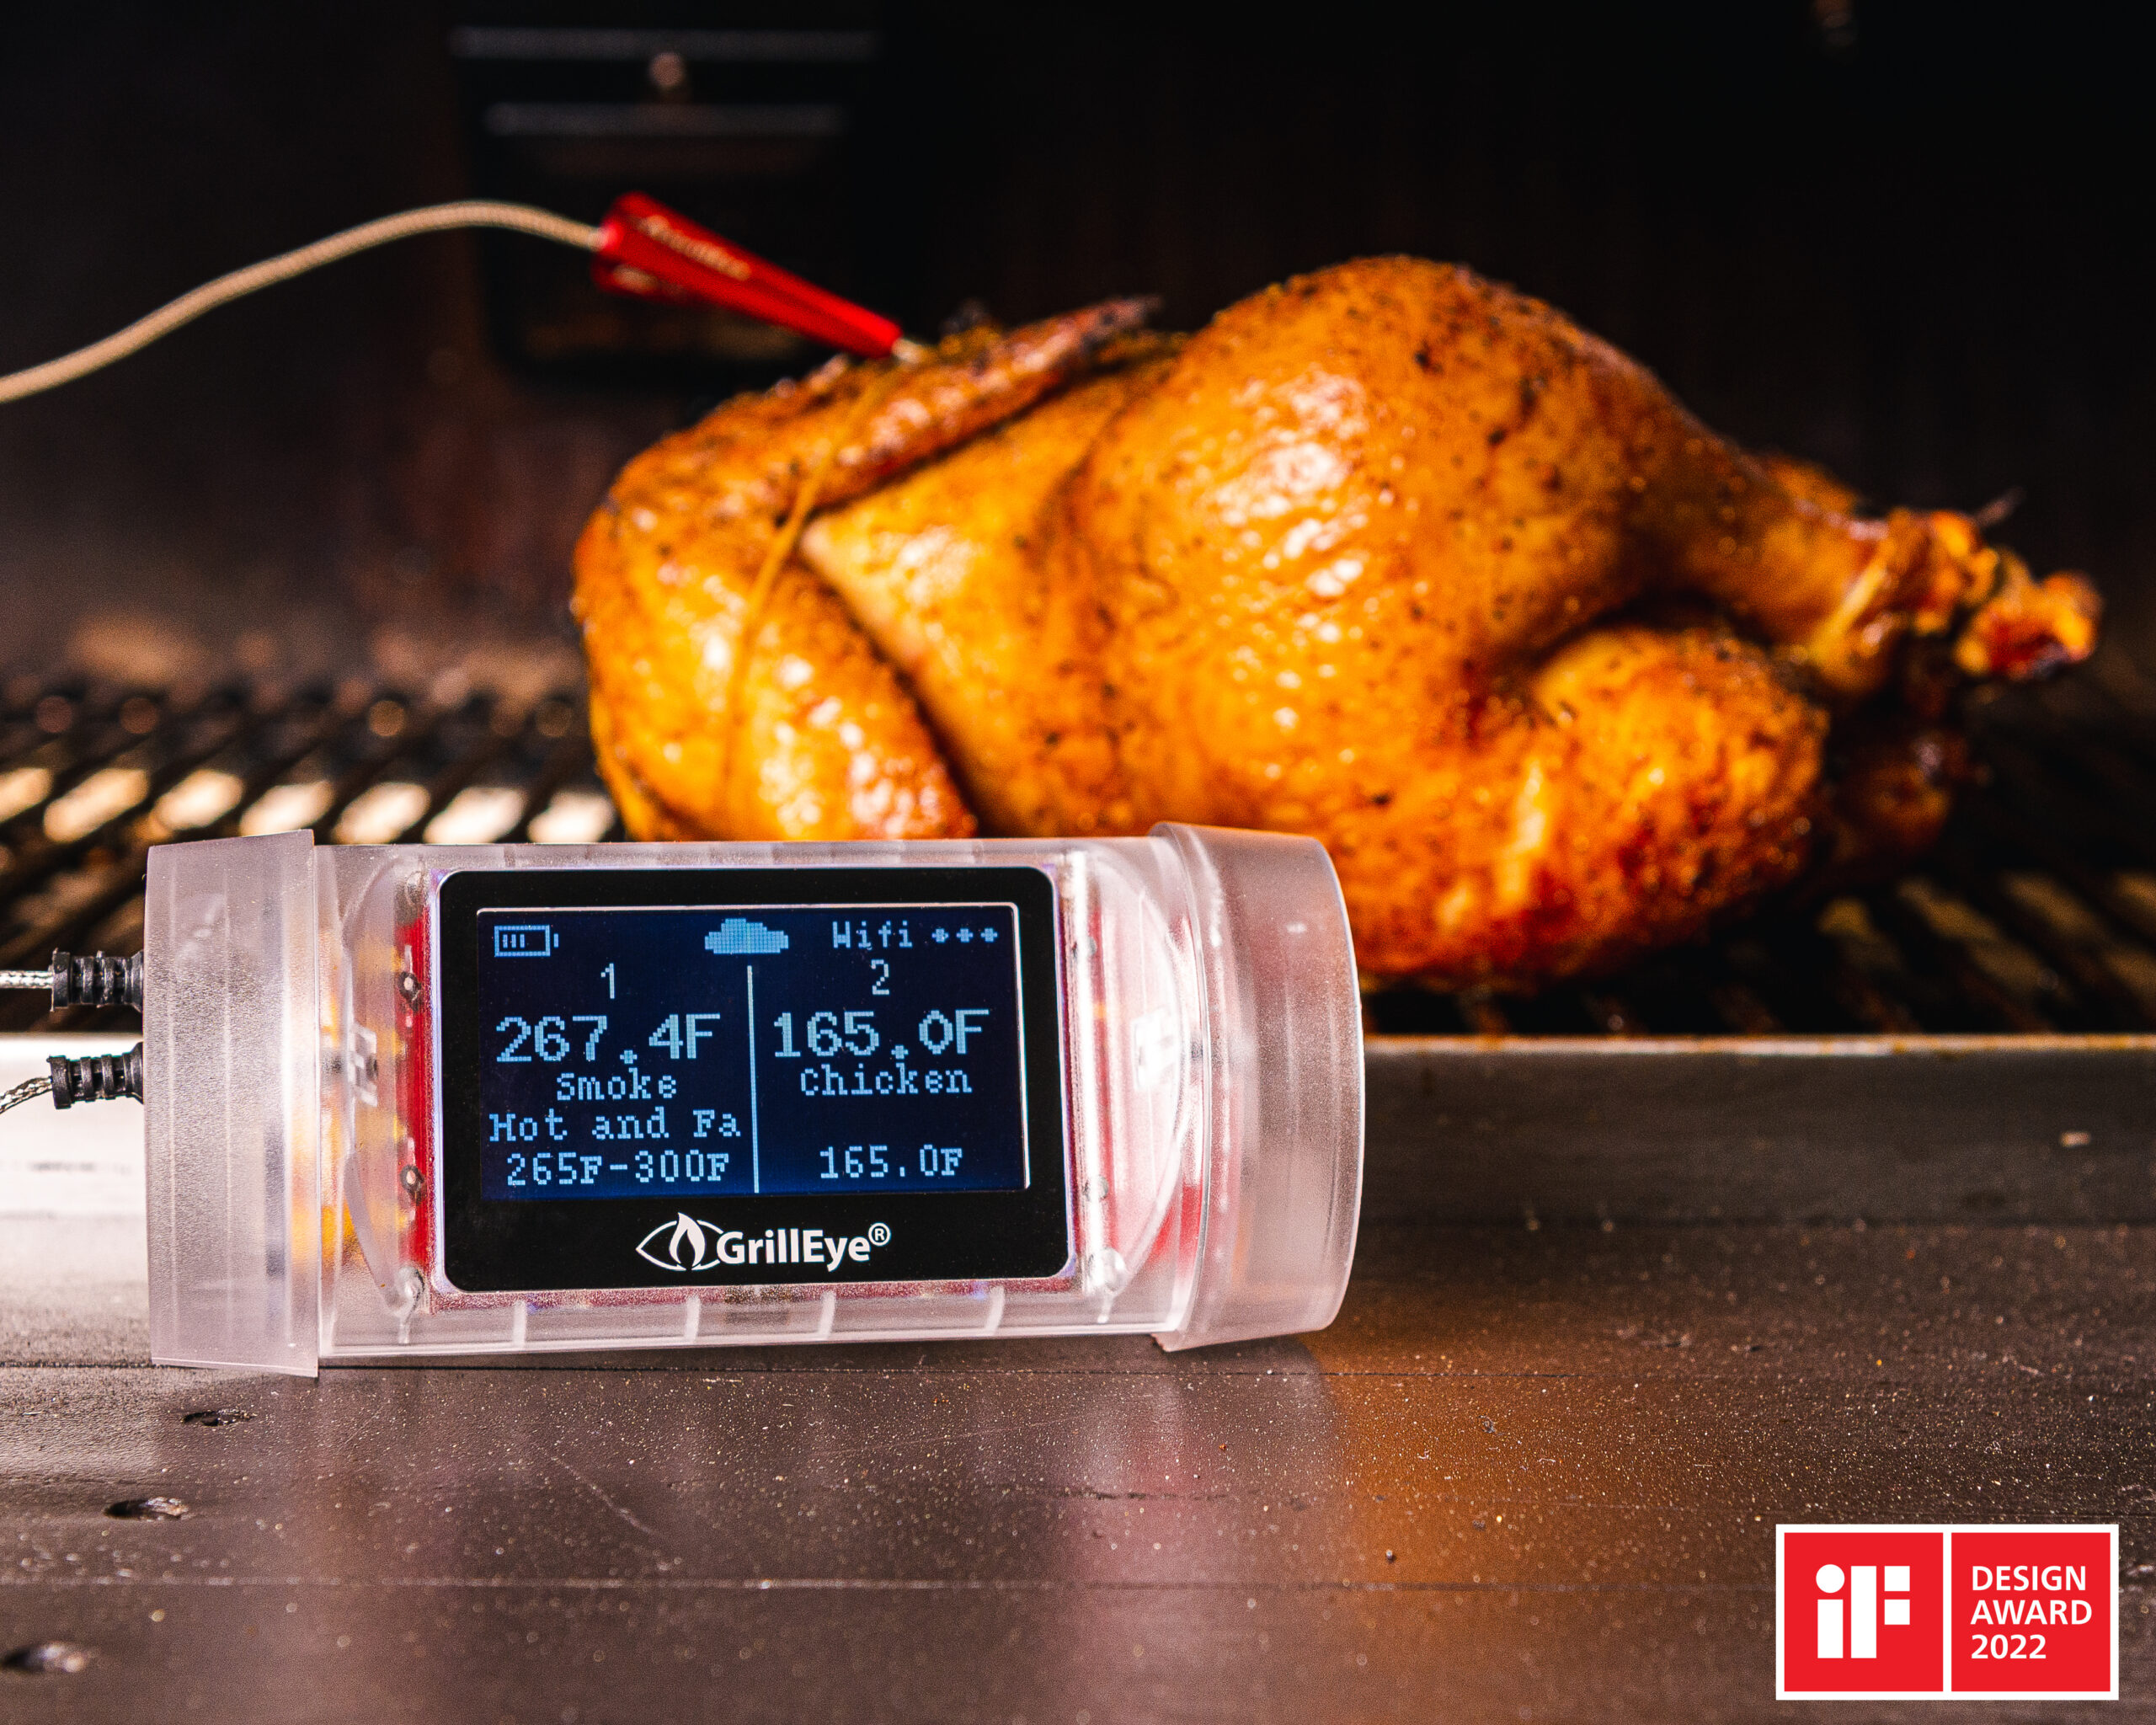 Grilleye steketermometer trådløst i bruk med en hel kylling